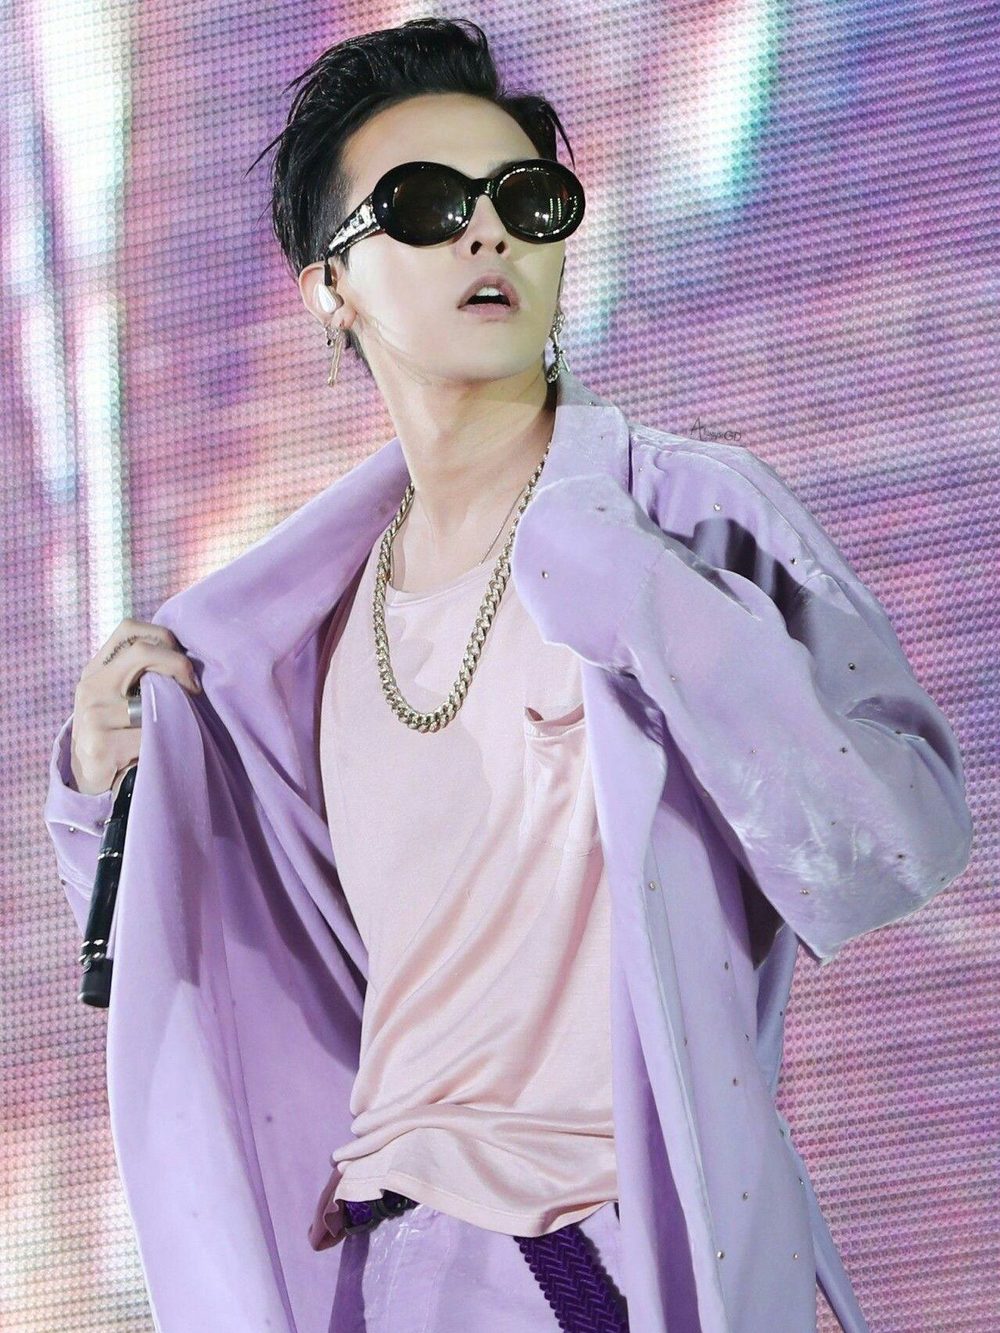  
Kỹ năng rap tuyệt vời lại còn biết sáng tác, G-Dragon đích thực là một huyền thoại. (Ảnh: Facebook)